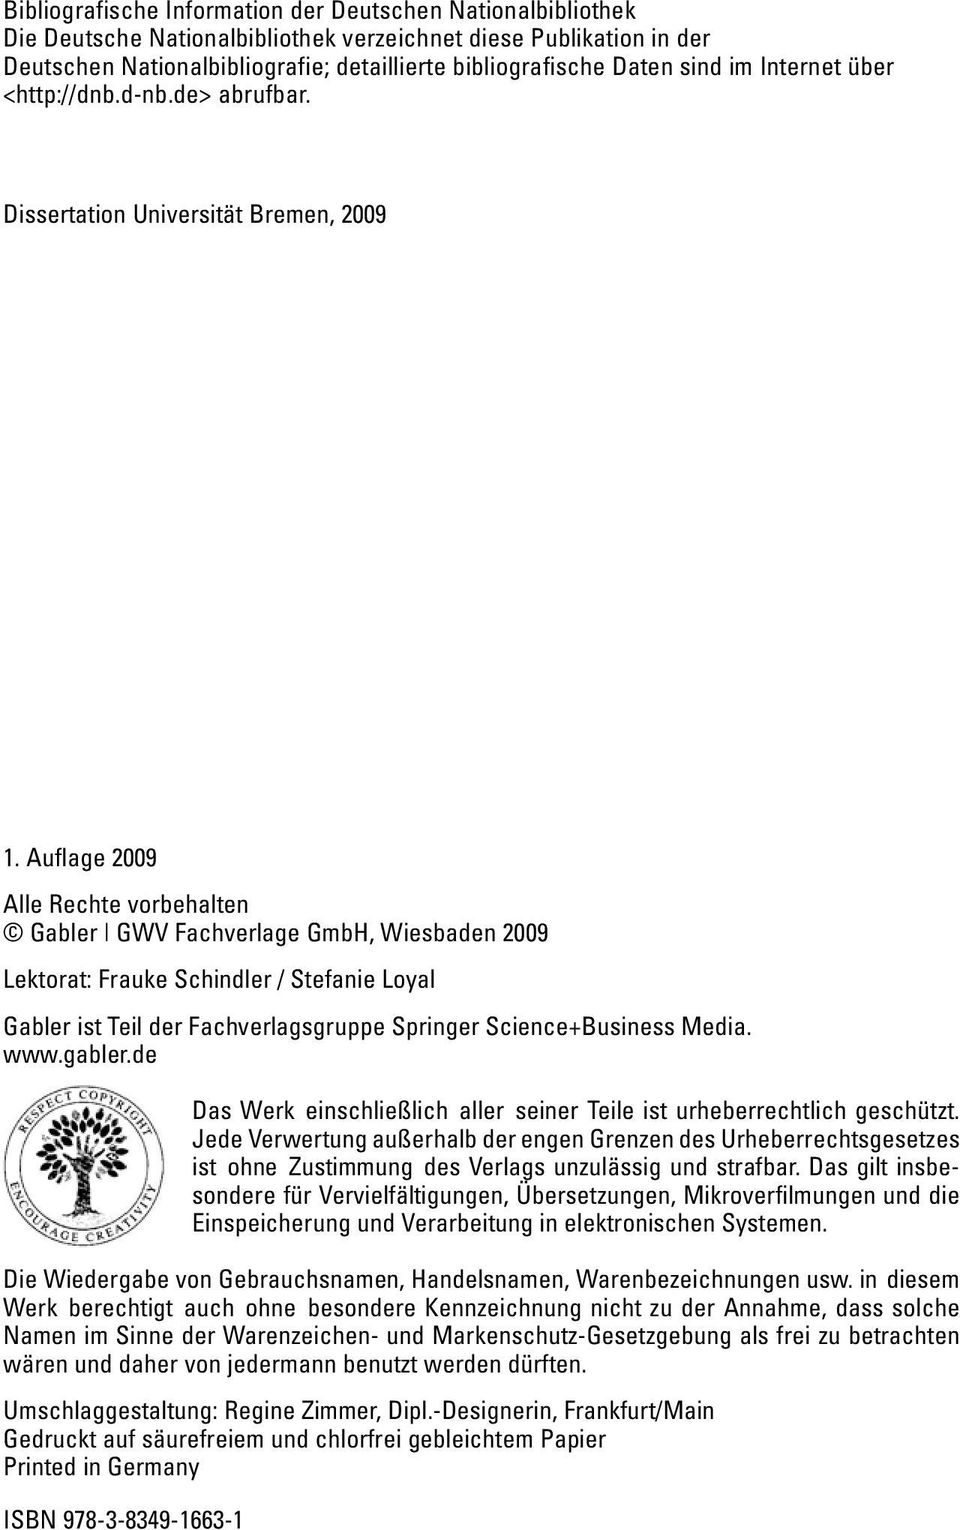 Auflage 2009 Alle Rechte vorbehalten Gabler GWV Fachverlage GmbH, Wiesbaden 2009 Lektorat: Frauke Schindler / Stefanie Loyal Gabler ist Teil der Fachverlagsgruppe Springer Science+Business Media. www.